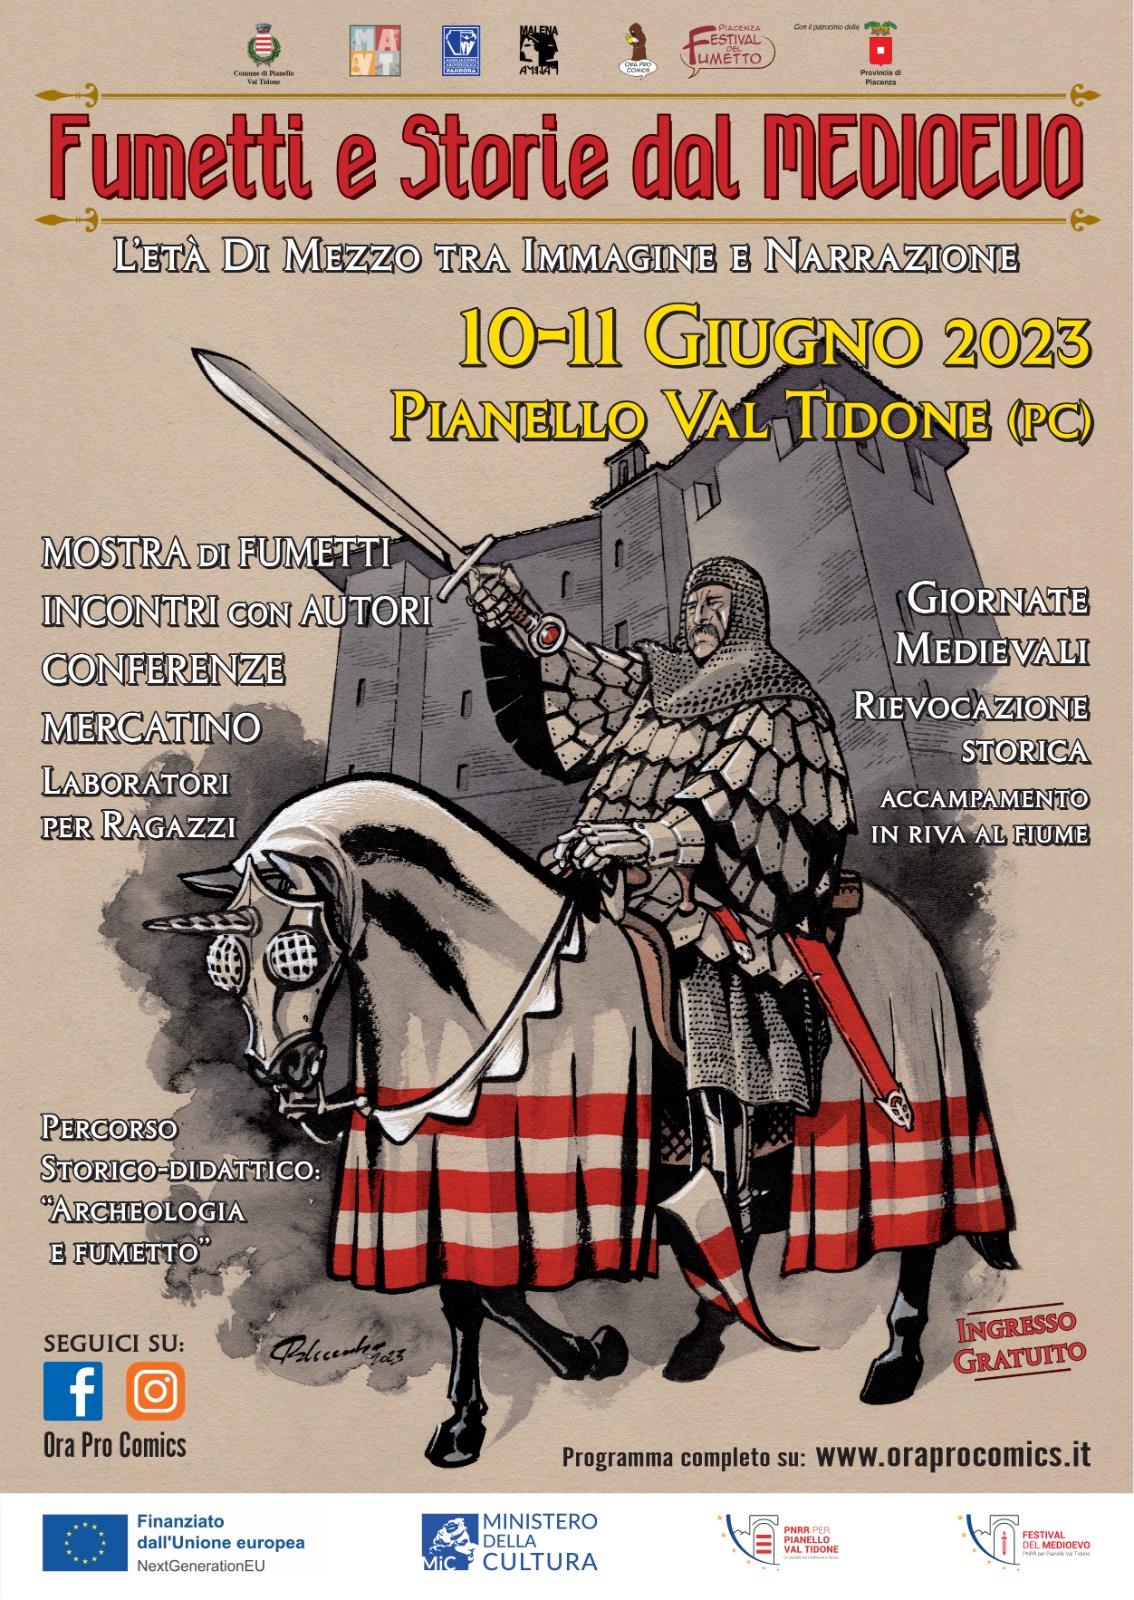 Festival del Medioevo Pianello Val Tidone